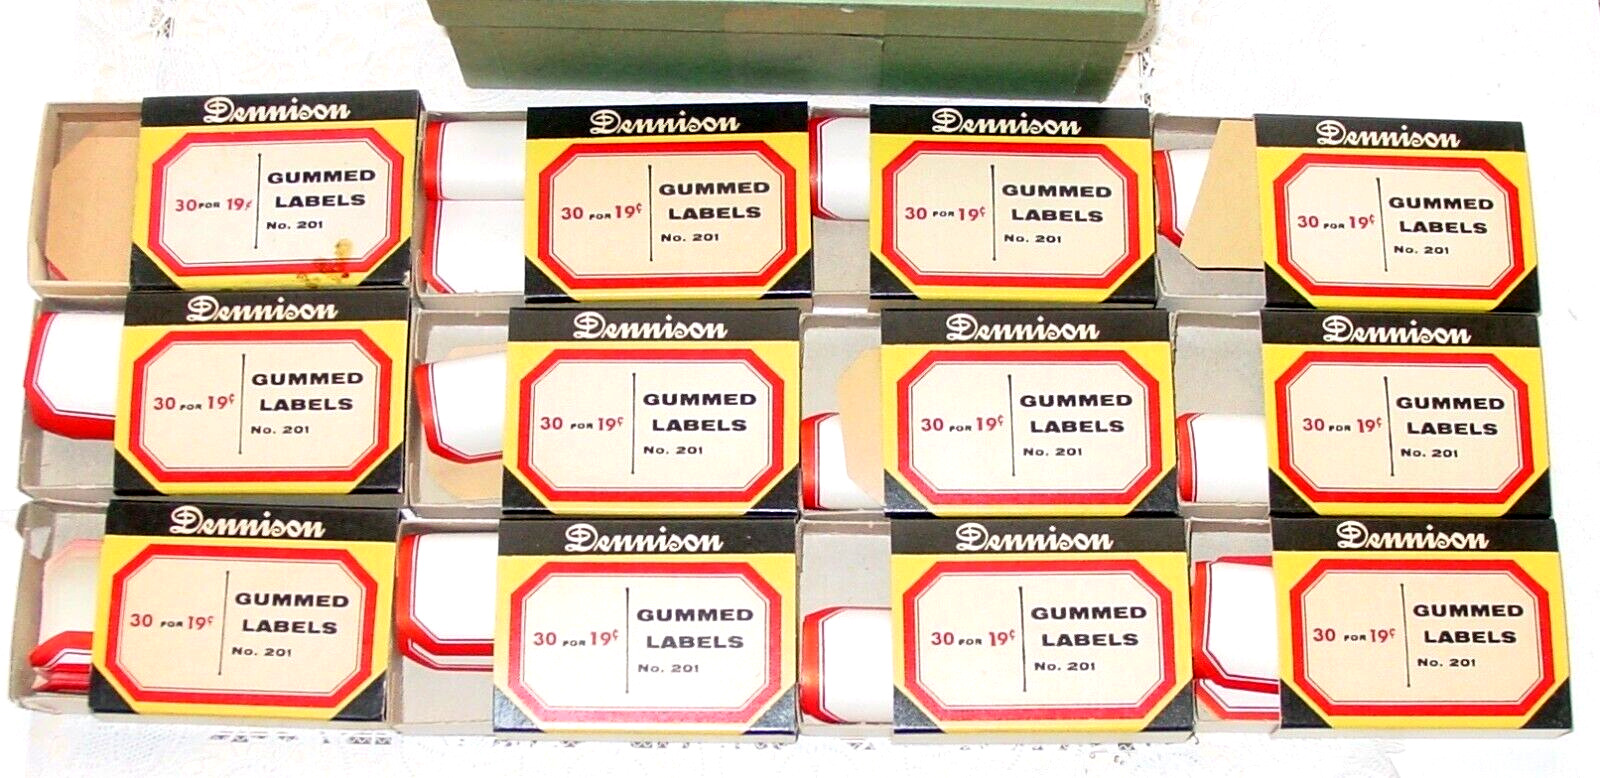 Vintage Dennison Gummed Red Border Labels 12 Boxes #201 Full Retail Case USA NOS